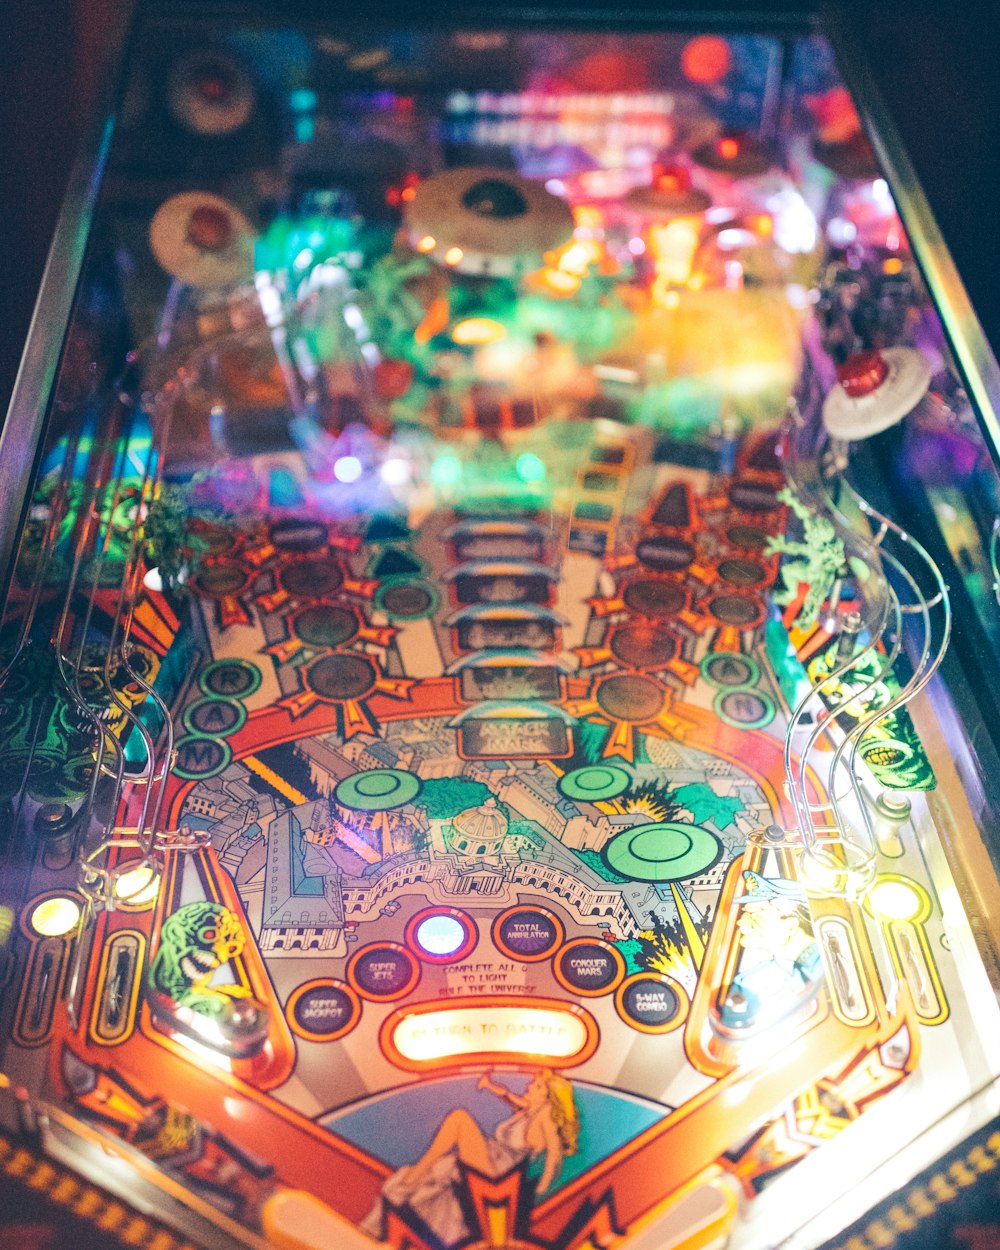 Fotografía de primer plano de la máquina de pinball azul y multicolor